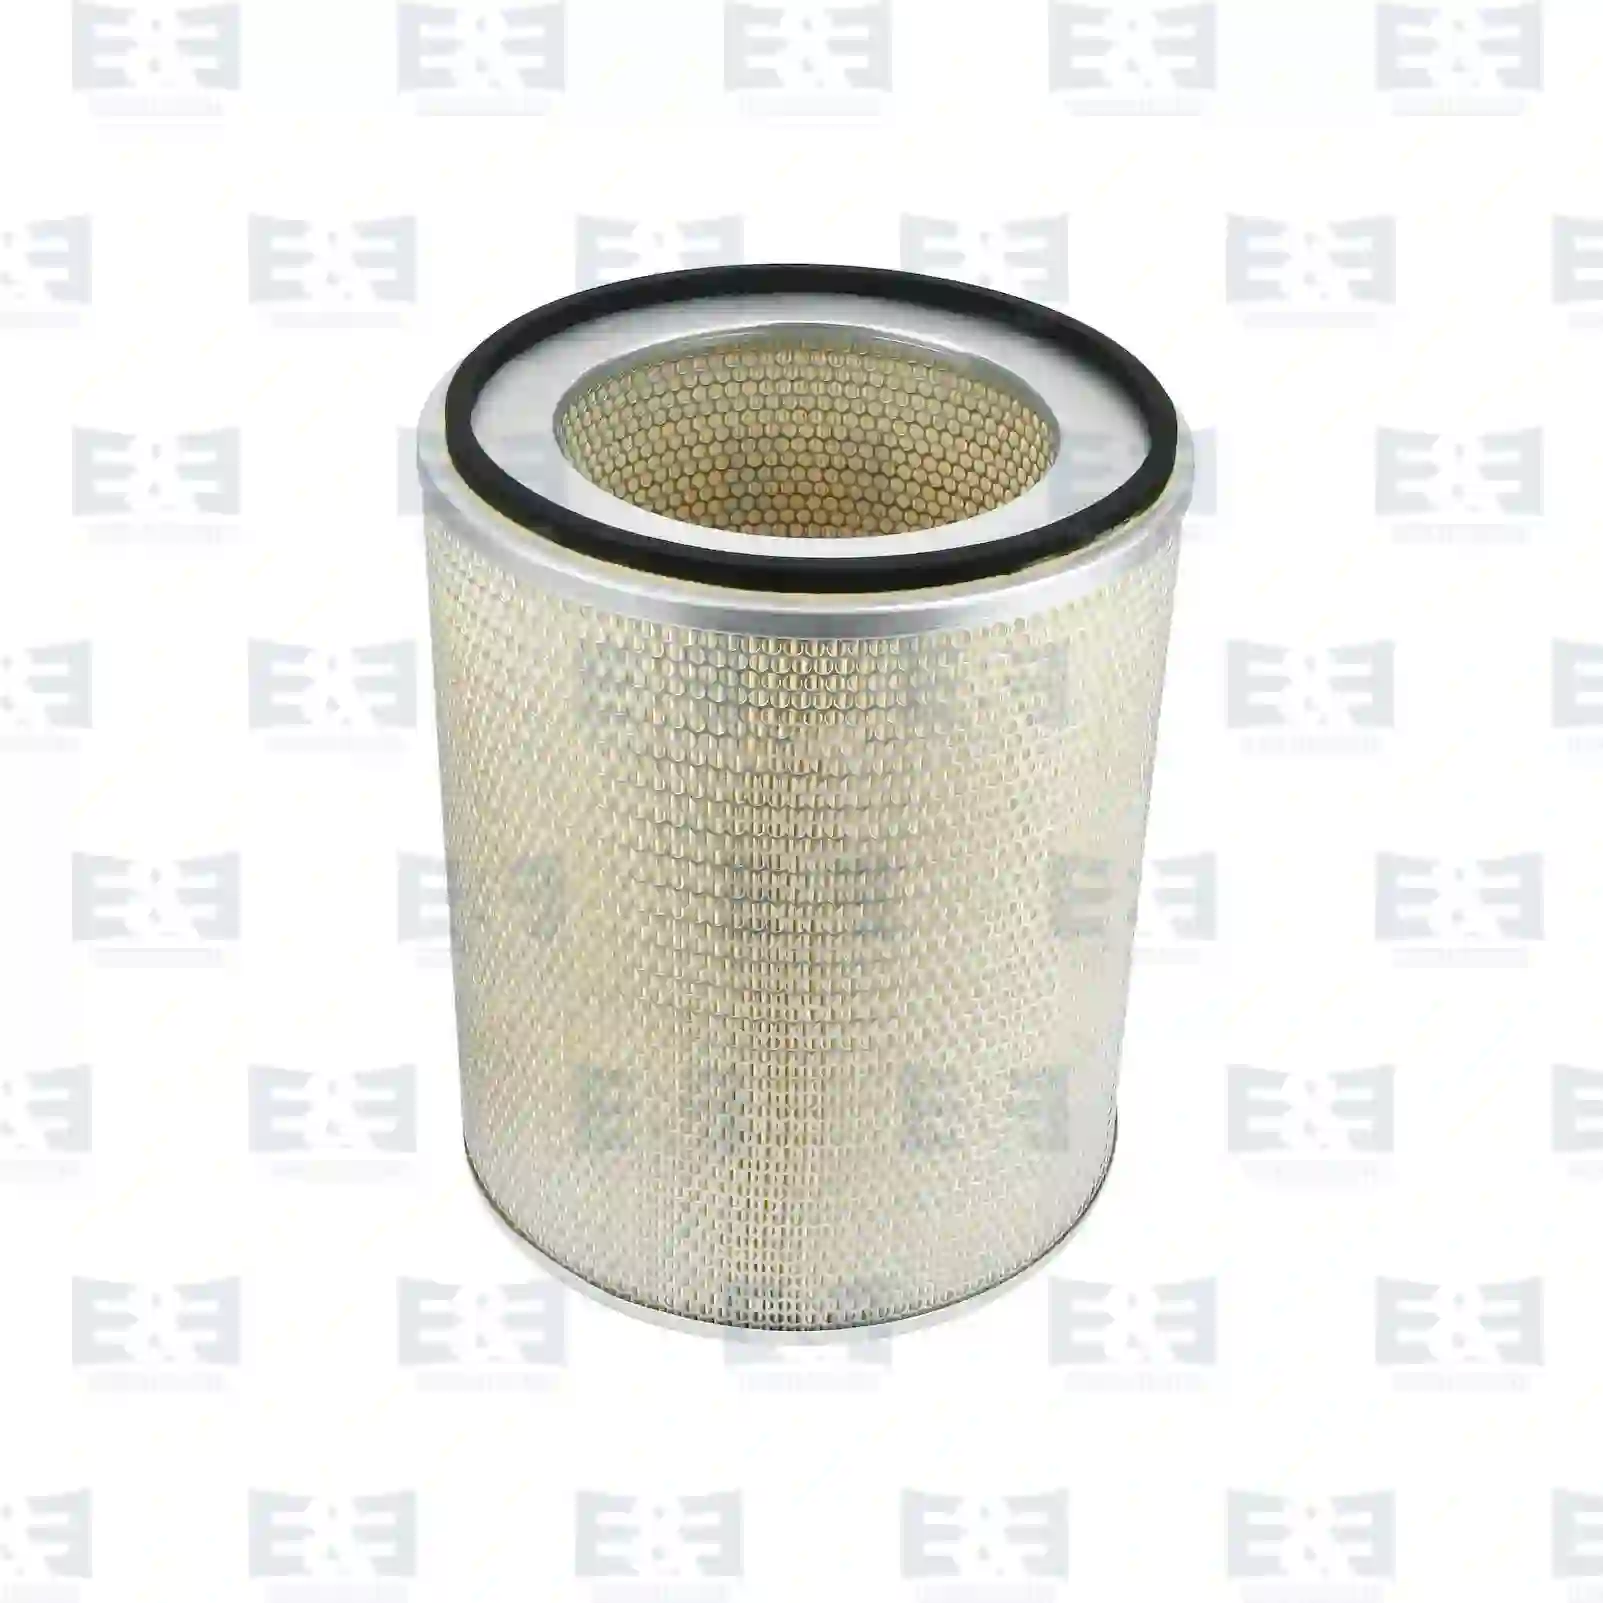 Air filter, 2E2204684, 6886463, BBU7951, Y05805510, 5011339, R5386, CH12283, 1542743, 15427438, 1544298, 1660619, 16606191, 16606196, 475386, 4753869, 475388, 6886463 ||  2E2204684 E&E Truck Spare Parts | Truck Spare Parts, Auotomotive Spare Parts Air filter, 2E2204684, 6886463, BBU7951, Y05805510, 5011339, R5386, CH12283, 1542743, 15427438, 1544298, 1660619, 16606191, 16606196, 475386, 4753869, 475388, 6886463 ||  2E2204684 E&E Truck Spare Parts | Truck Spare Parts, Auotomotive Spare Parts